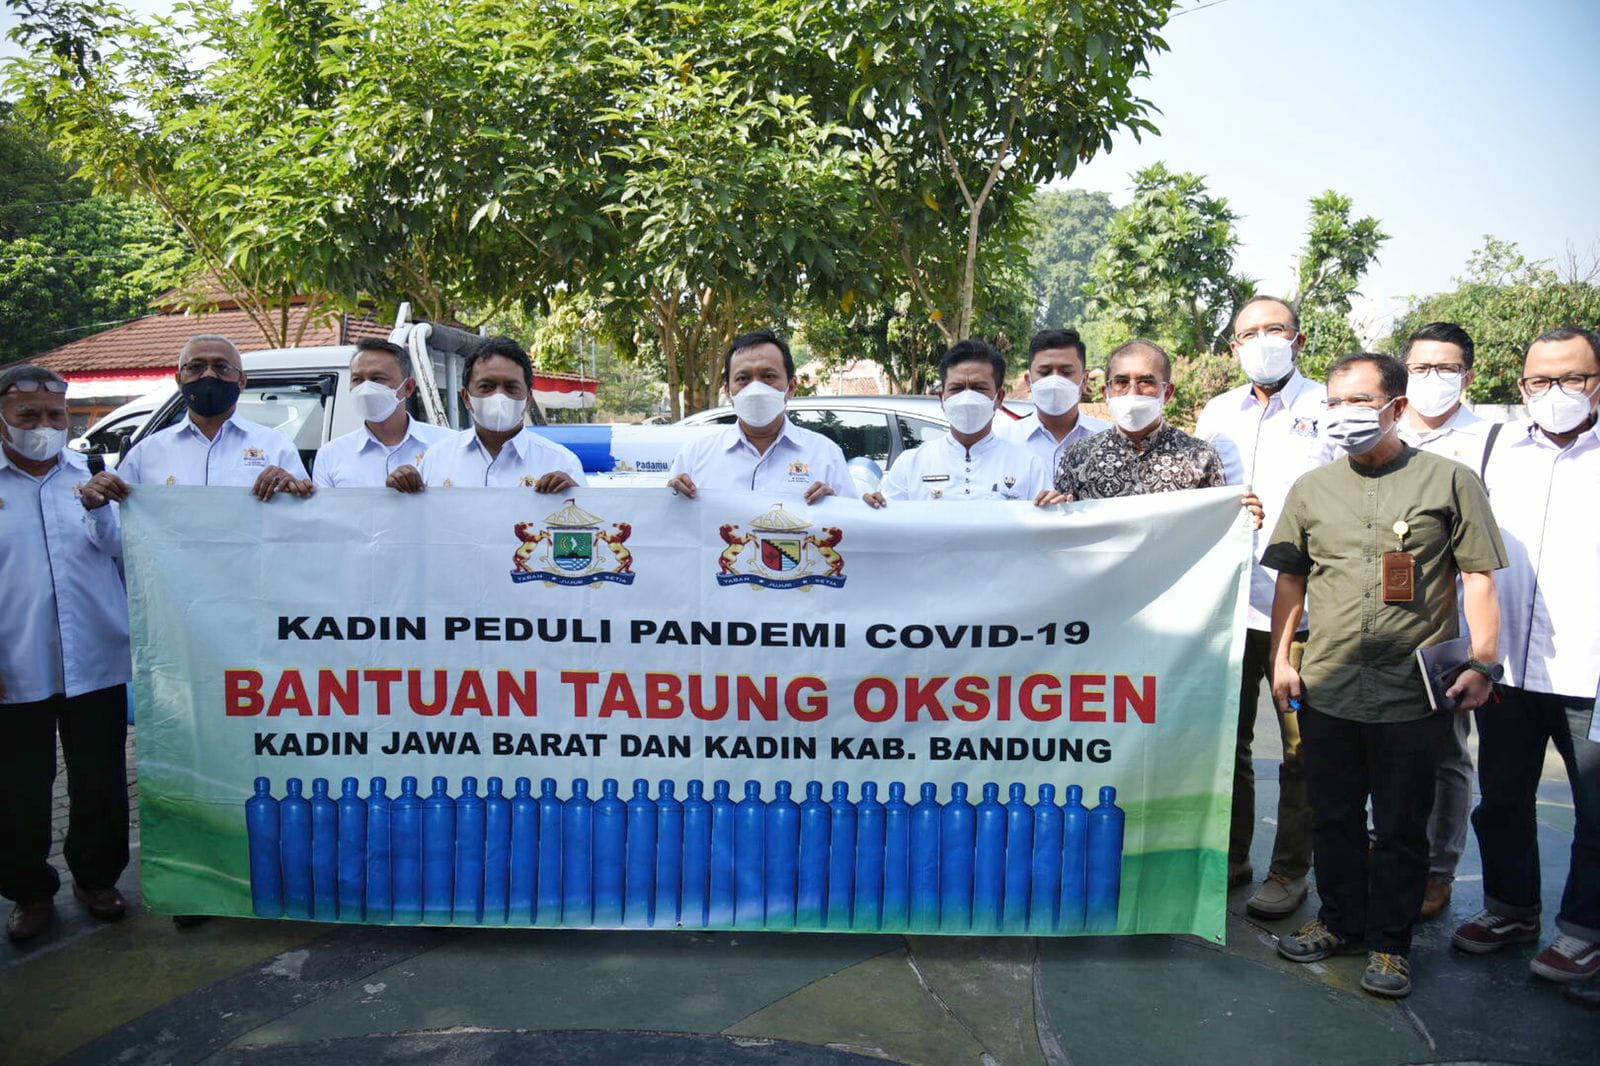 Penyerahan Bantuan Sebanyak 25 Tabung Oksigen dan 13 Regulator Oksigen dari Kadin kepada Pemkab Bandung di Rumah Jabatan Bupati Bandung, Dadang Supriatna, Soreang, Jumat (3/9).